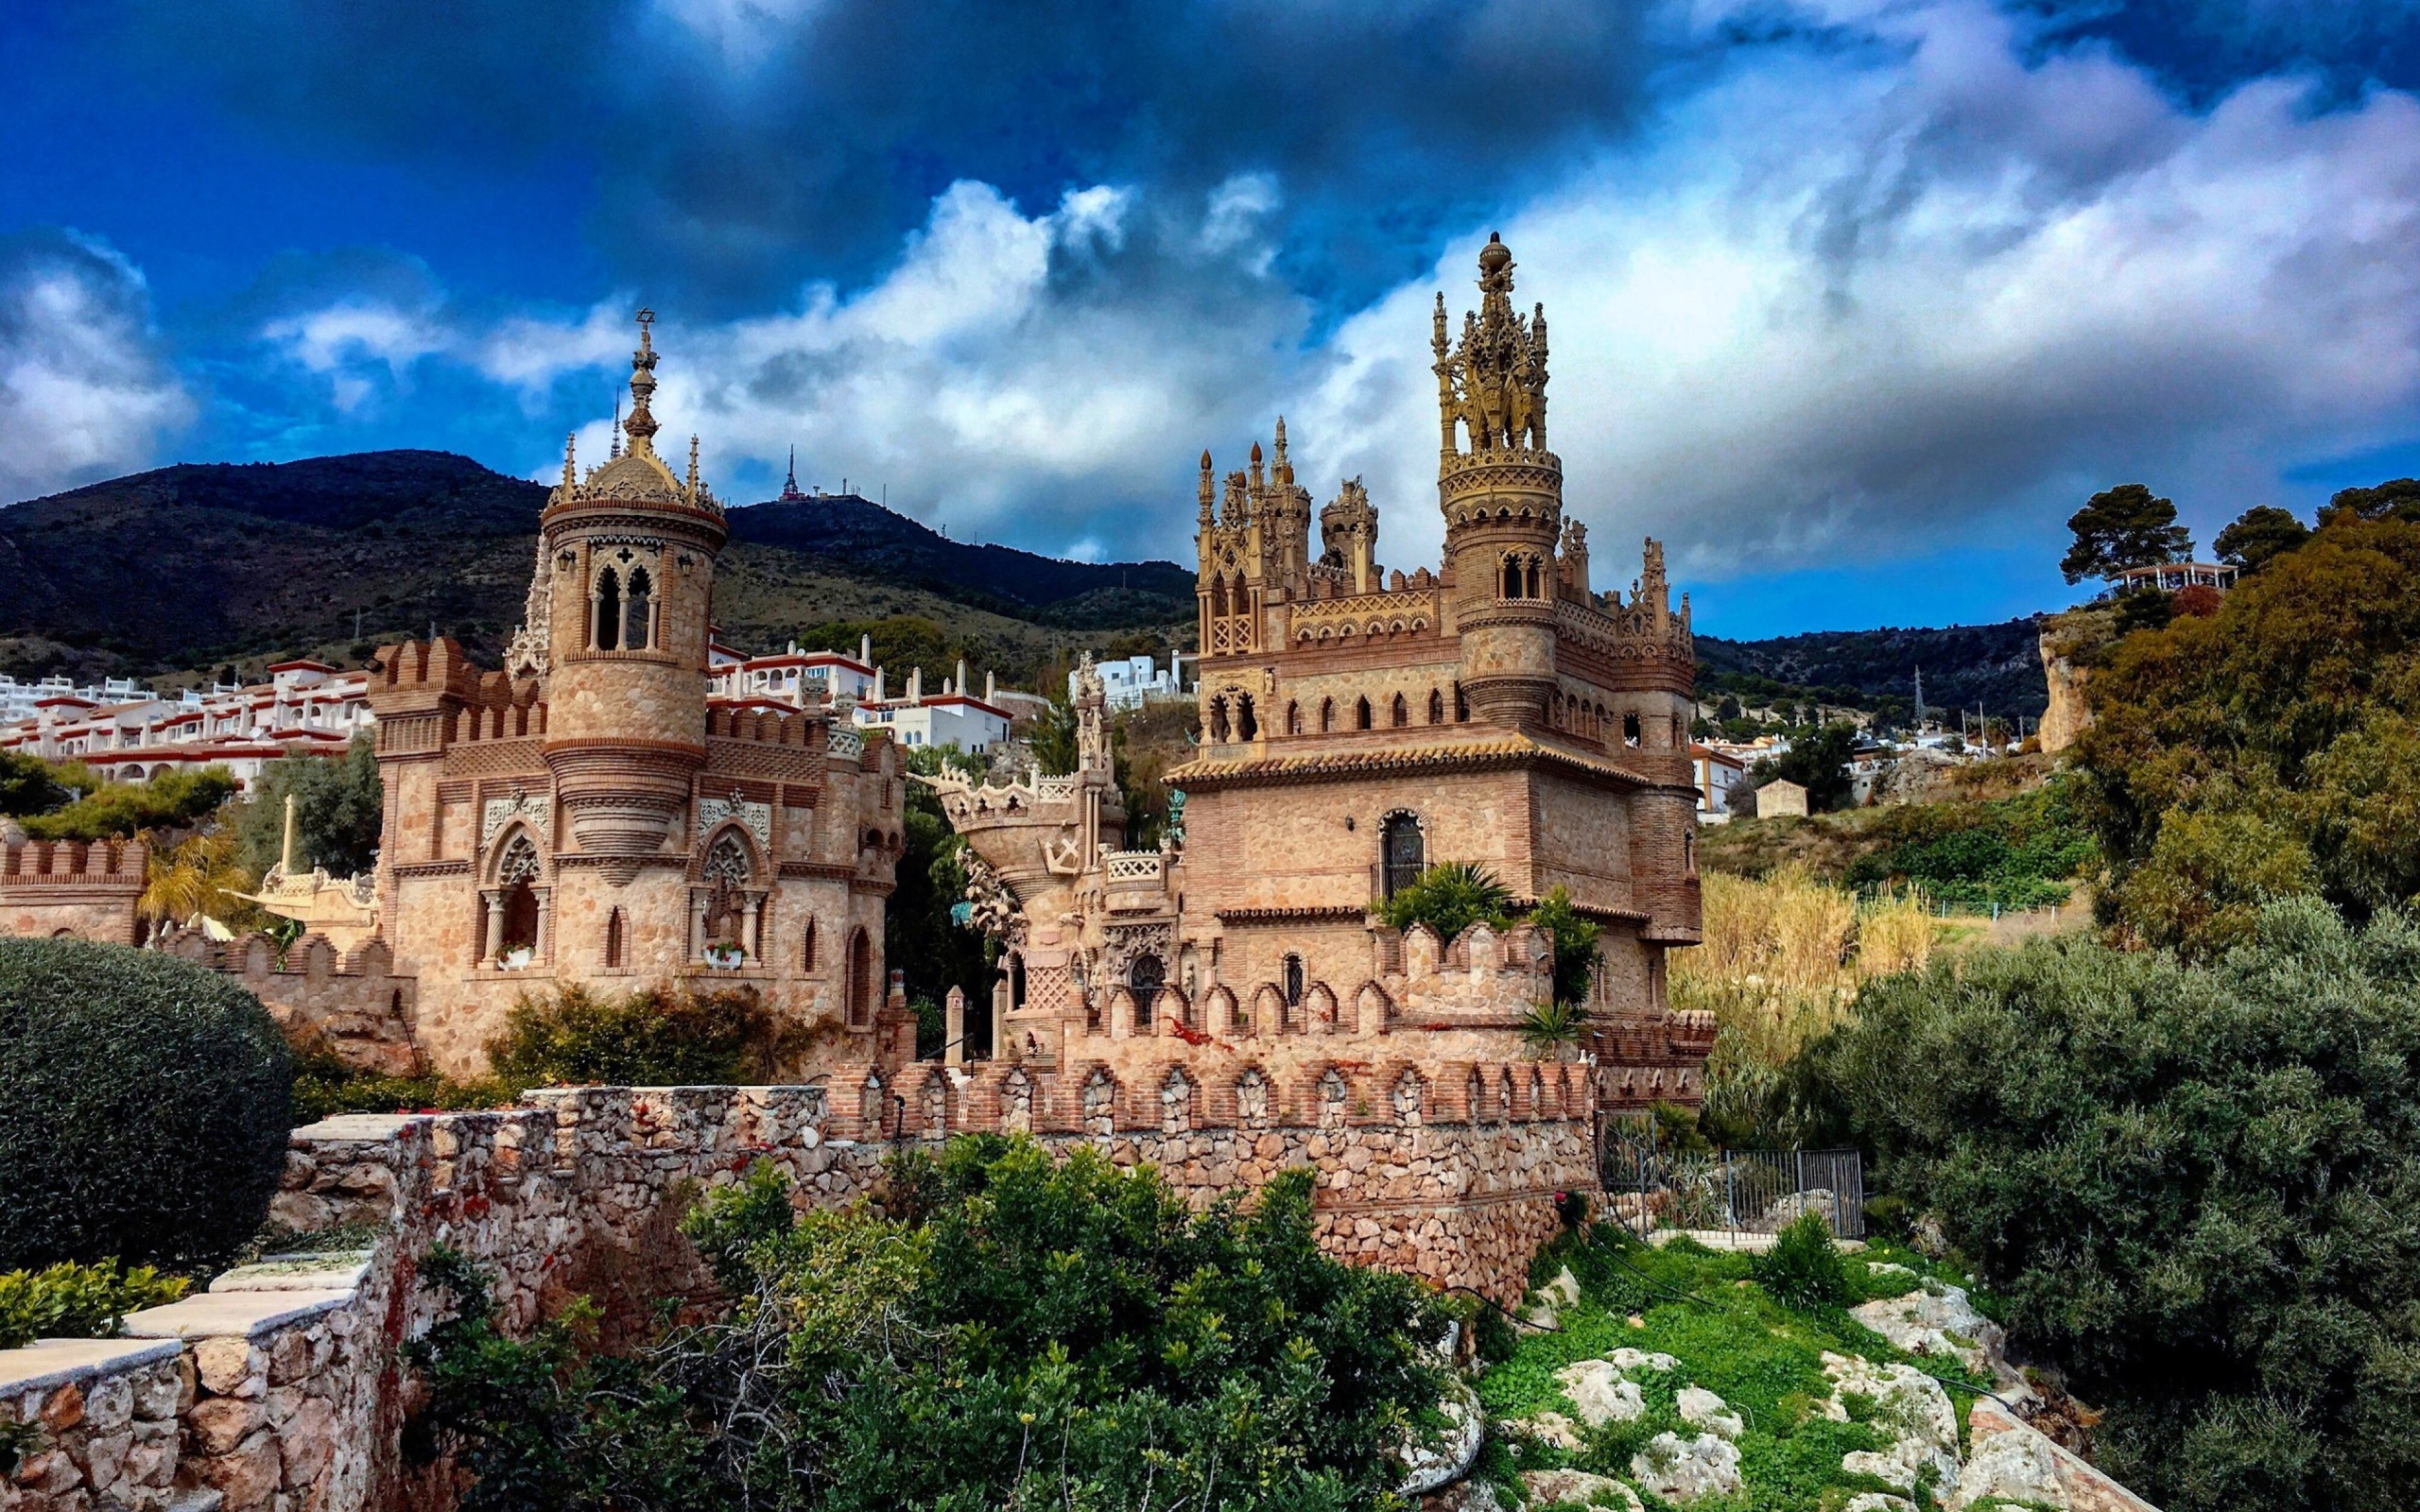 Das Castillo de Colomares in Spain Benalmadena Wallpaper 2560x1600